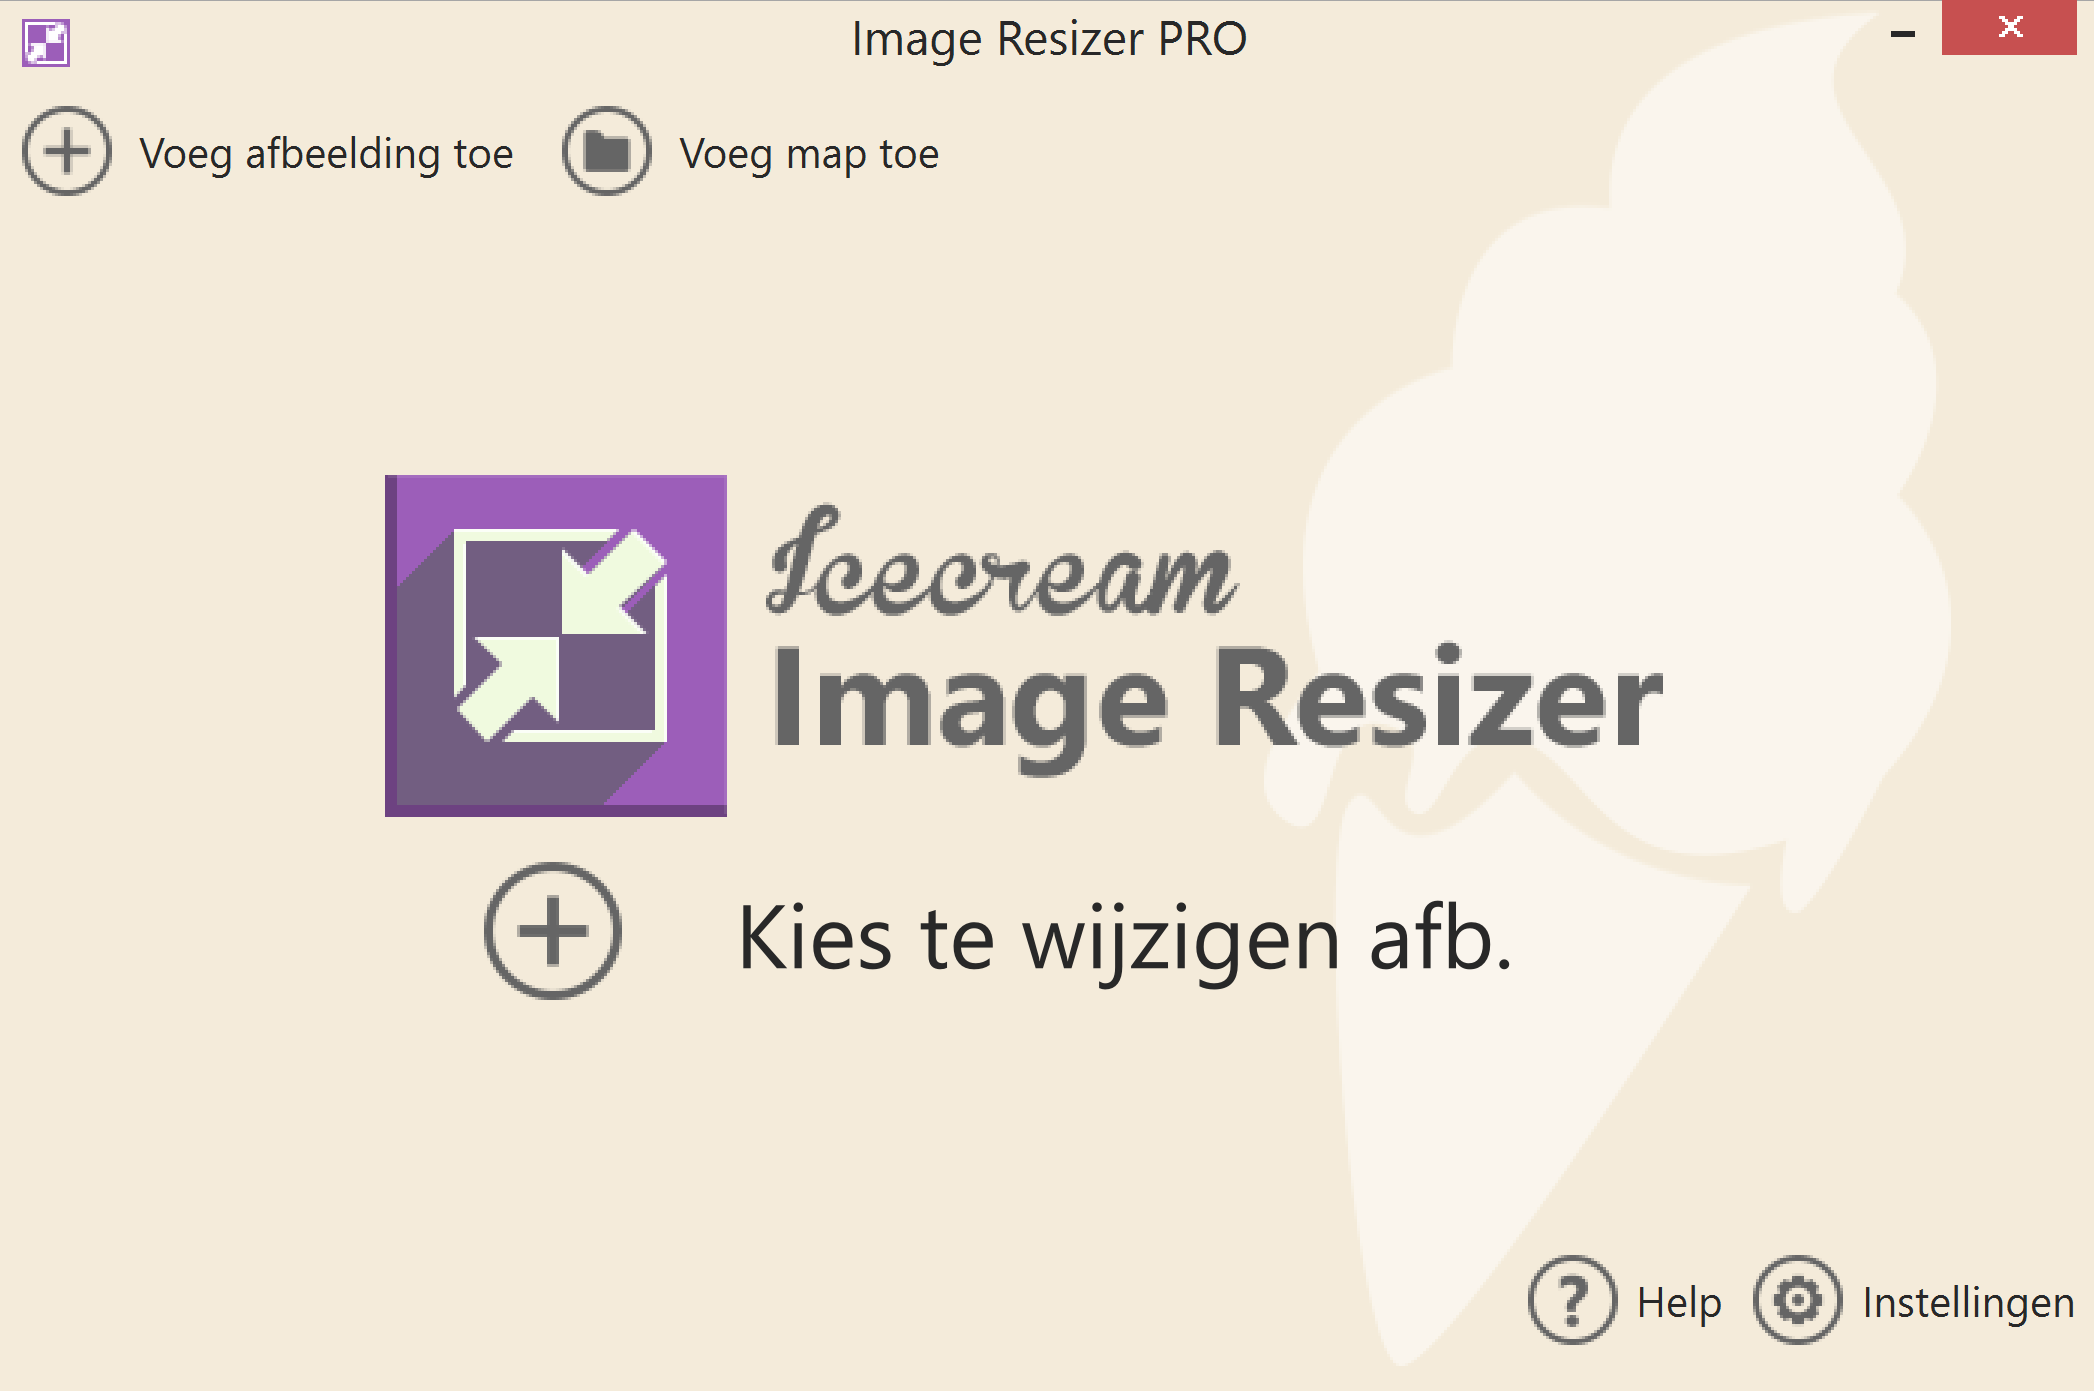 Icecream Image Resizer 2.12 Pro (Nederlands)